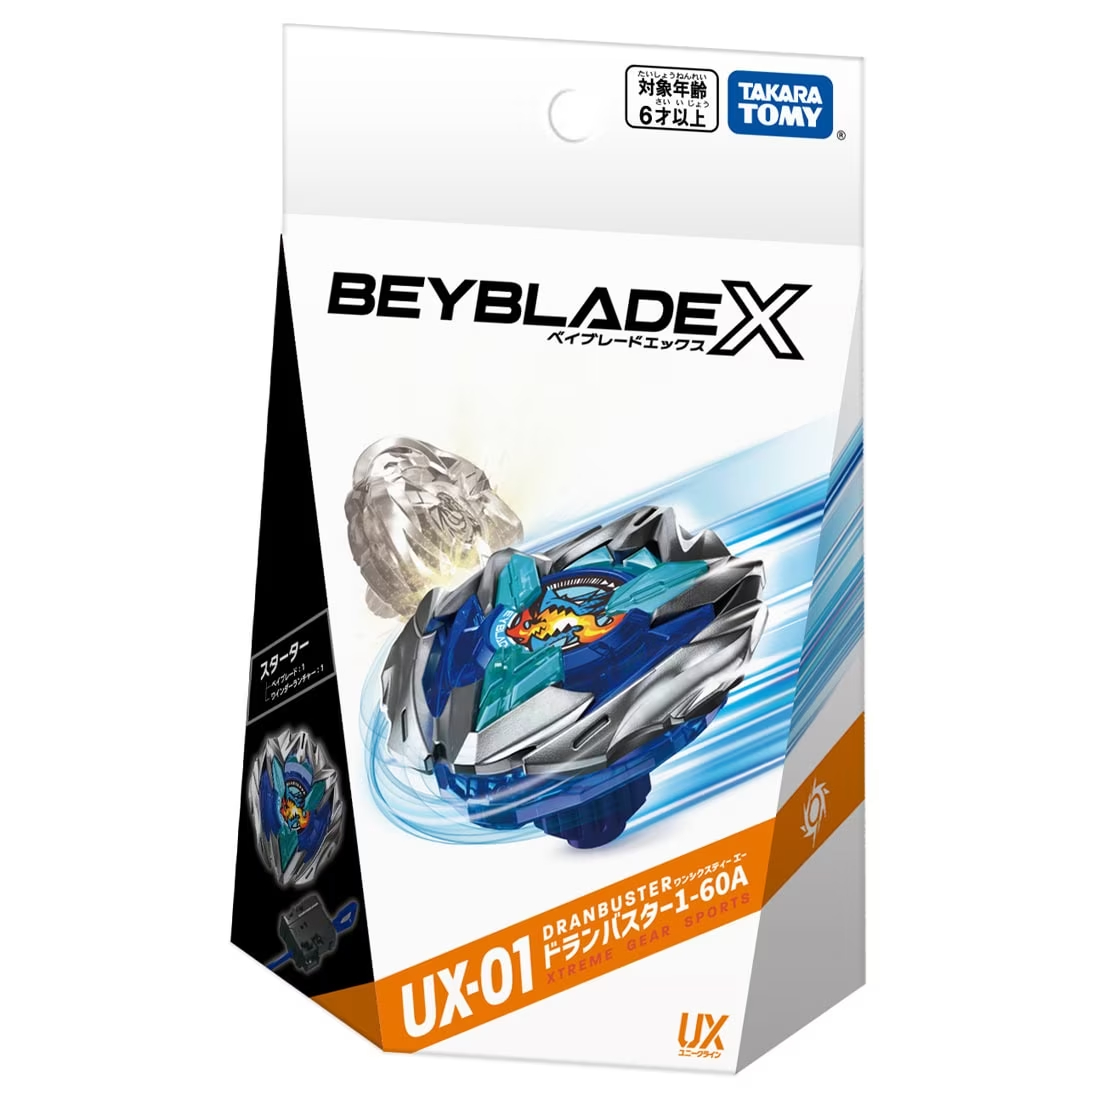 BEYBLADE X『UX-01 スターター ドランバスター1-60A』ベイブレード-004